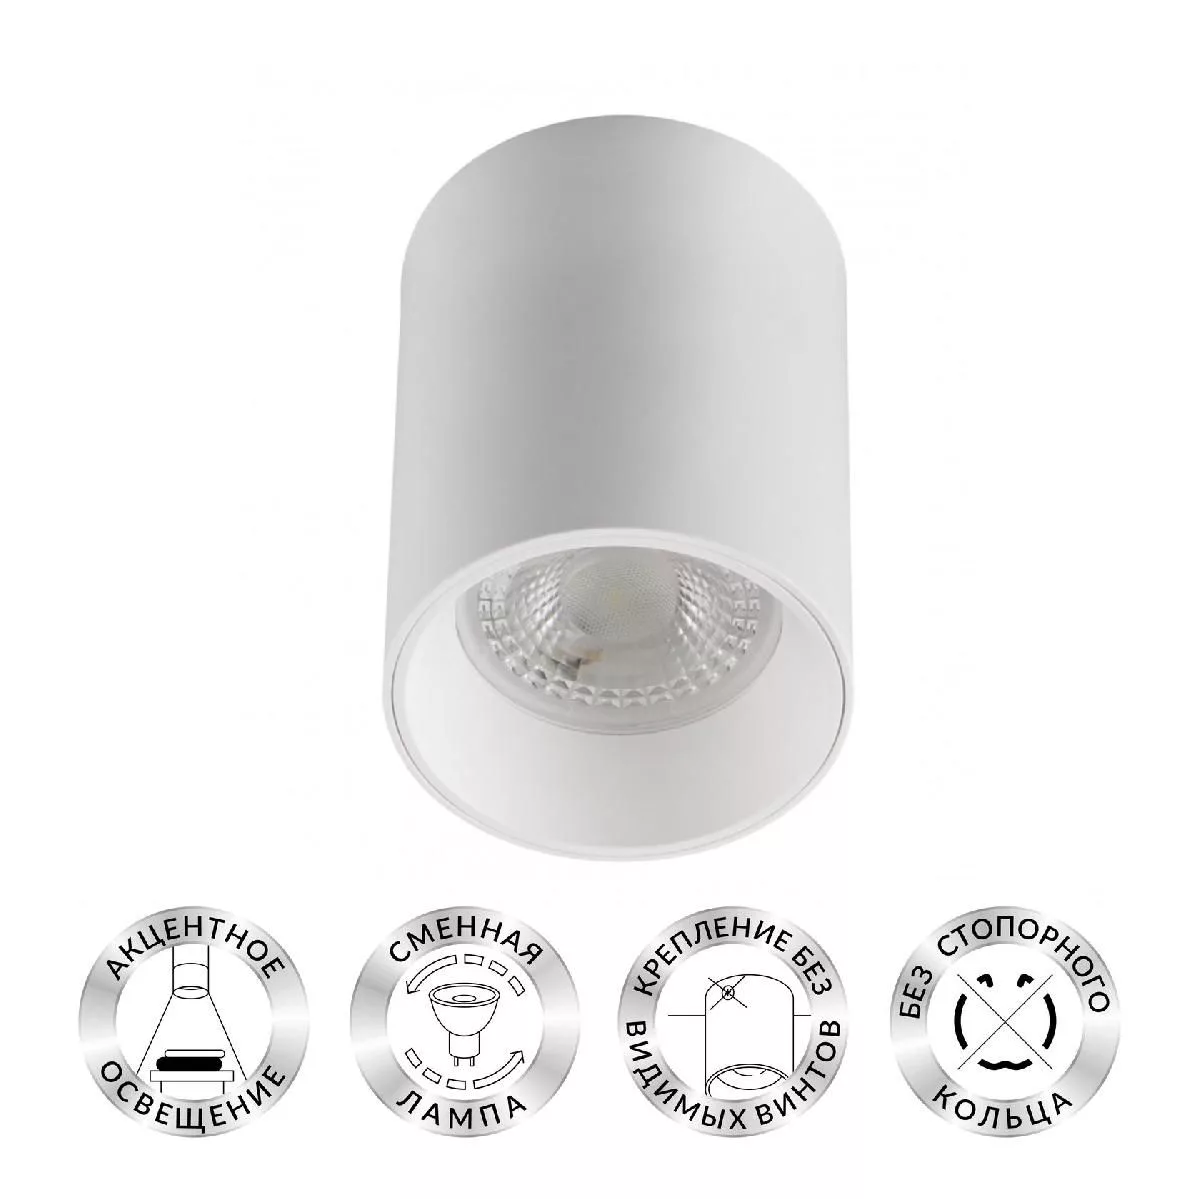 Светильник накладной IP 20, 10 Вт, GU5.3, LED, белый, пластик